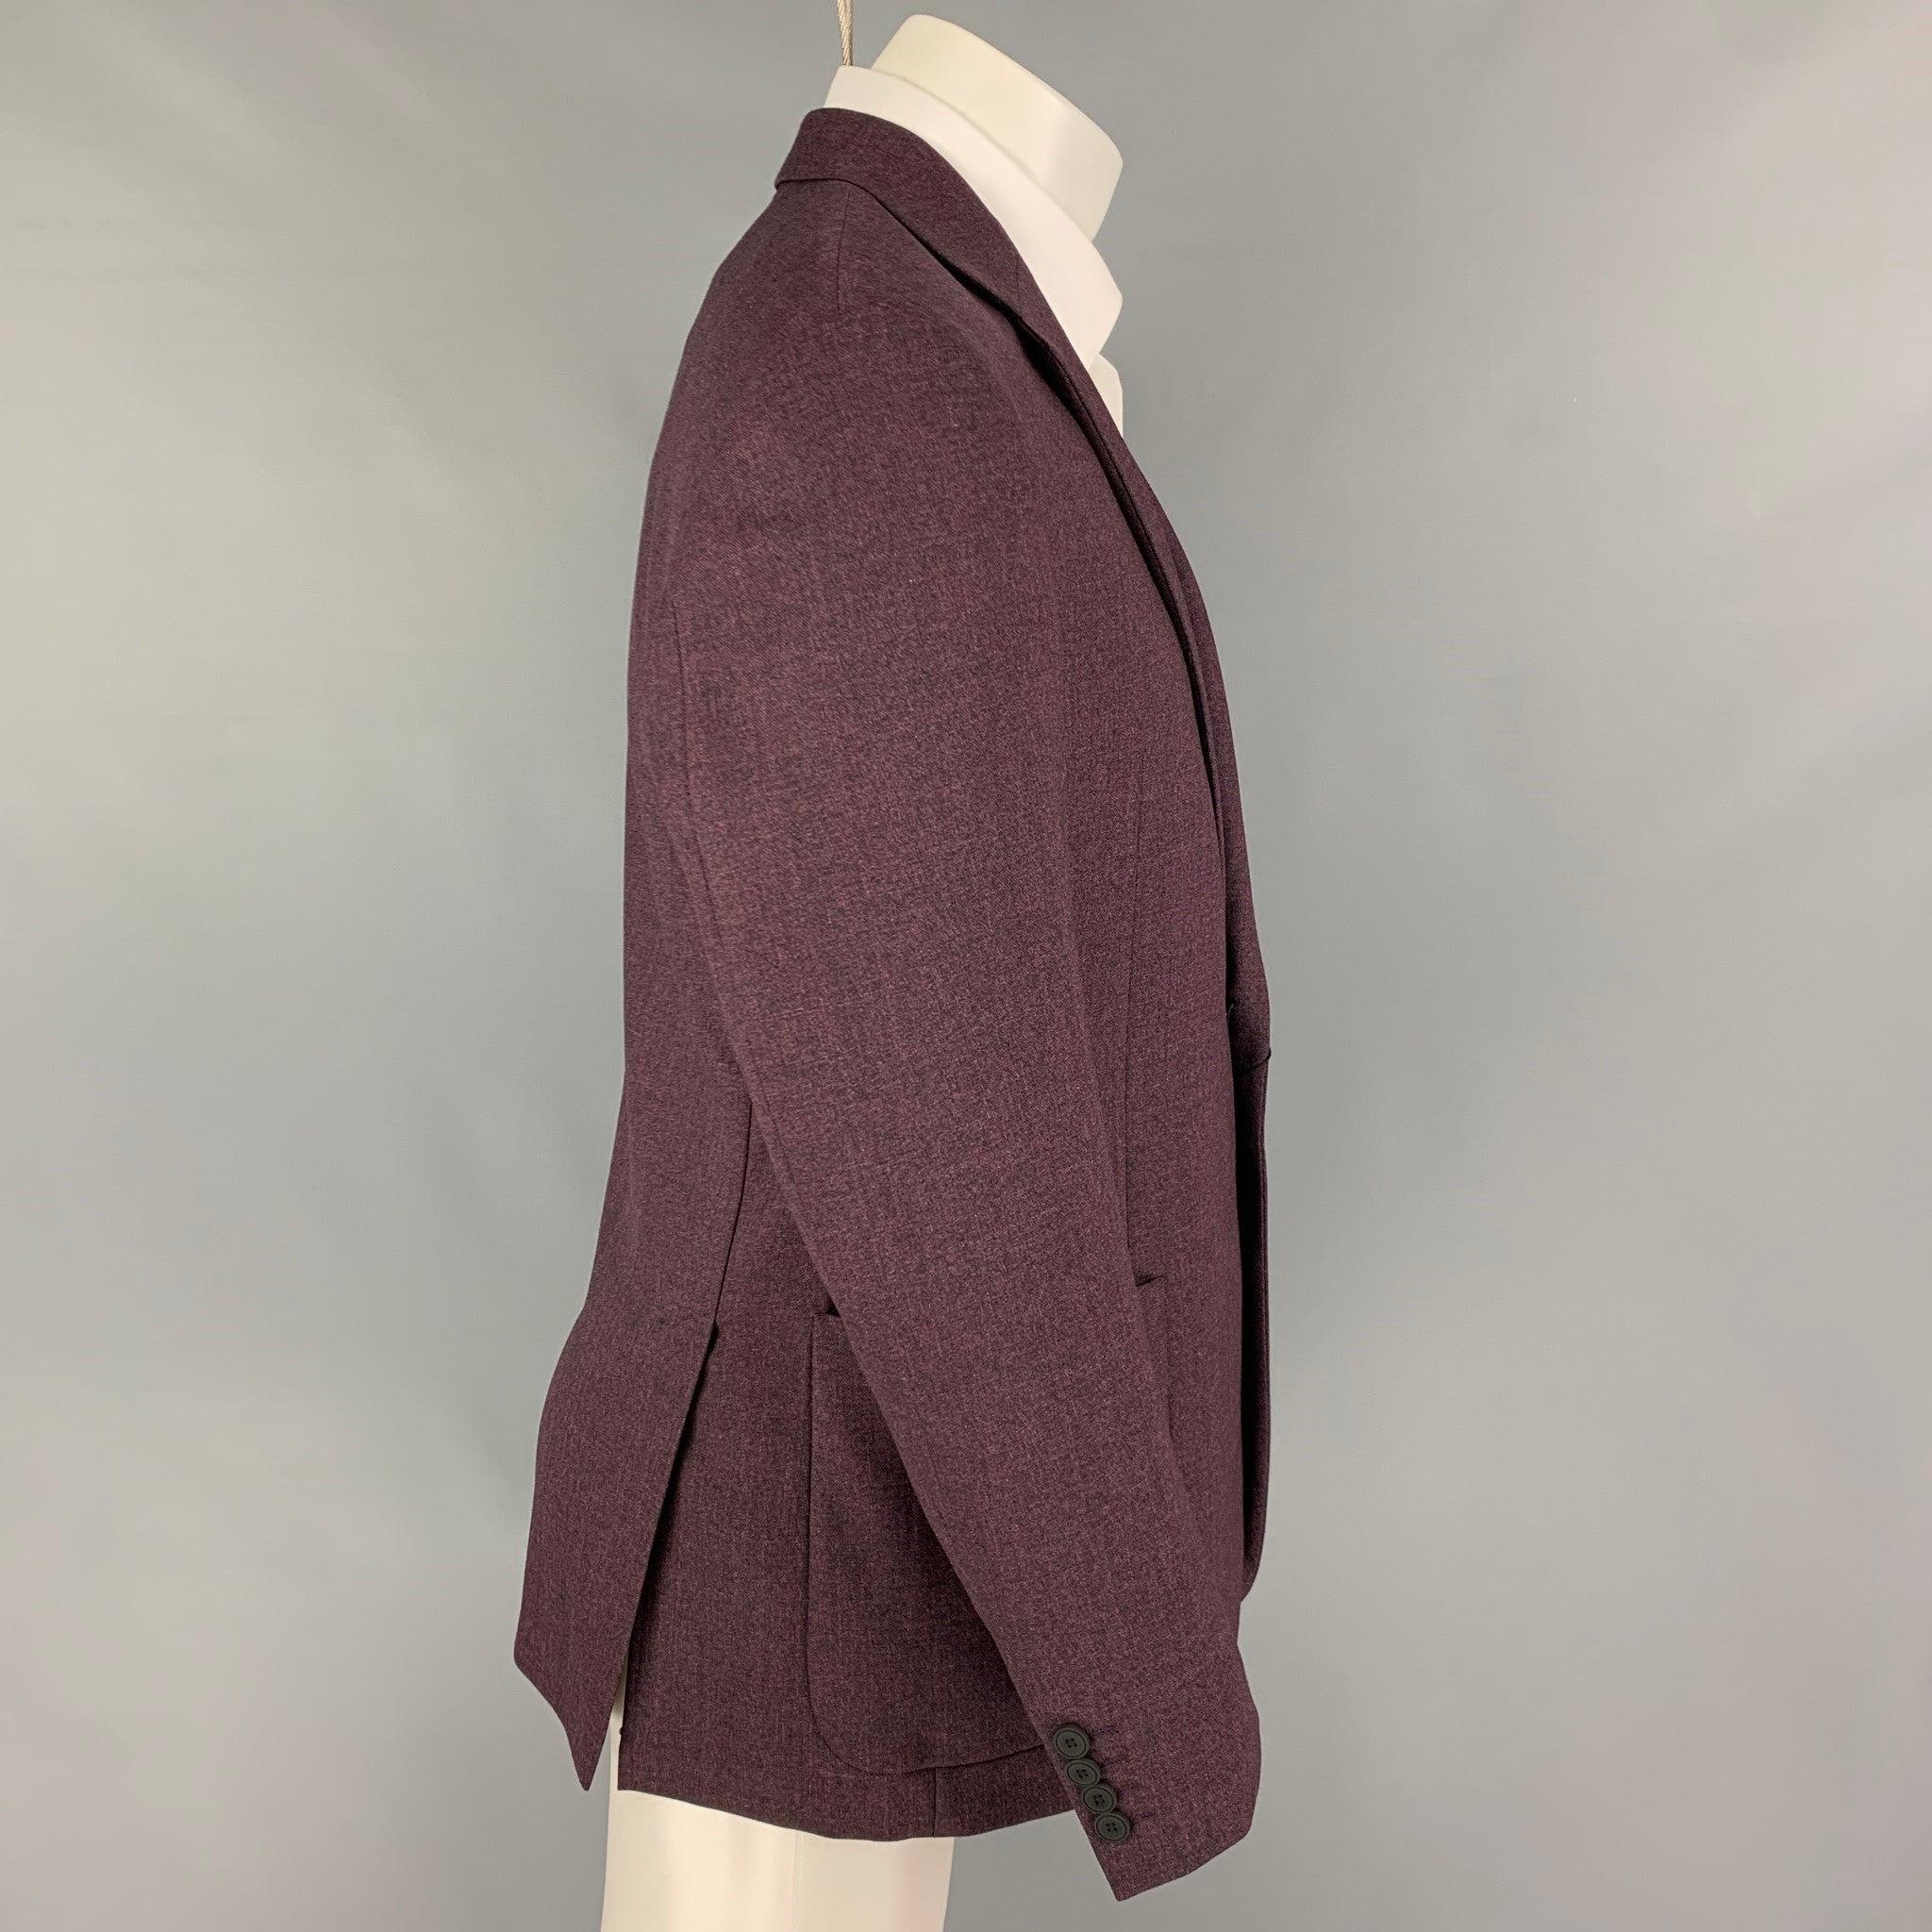 Manteau de sport EMPORIO ARMANI en laine chinée violette avec demi-doublure, revers à cran, poches plaquées, double fente arrière et double boutonnage.
Neuf avec étiquettes.
 

Marqué :   50 

Mesures : 
 
Épaule : 18 pouces  Poitrine : 40 pouces